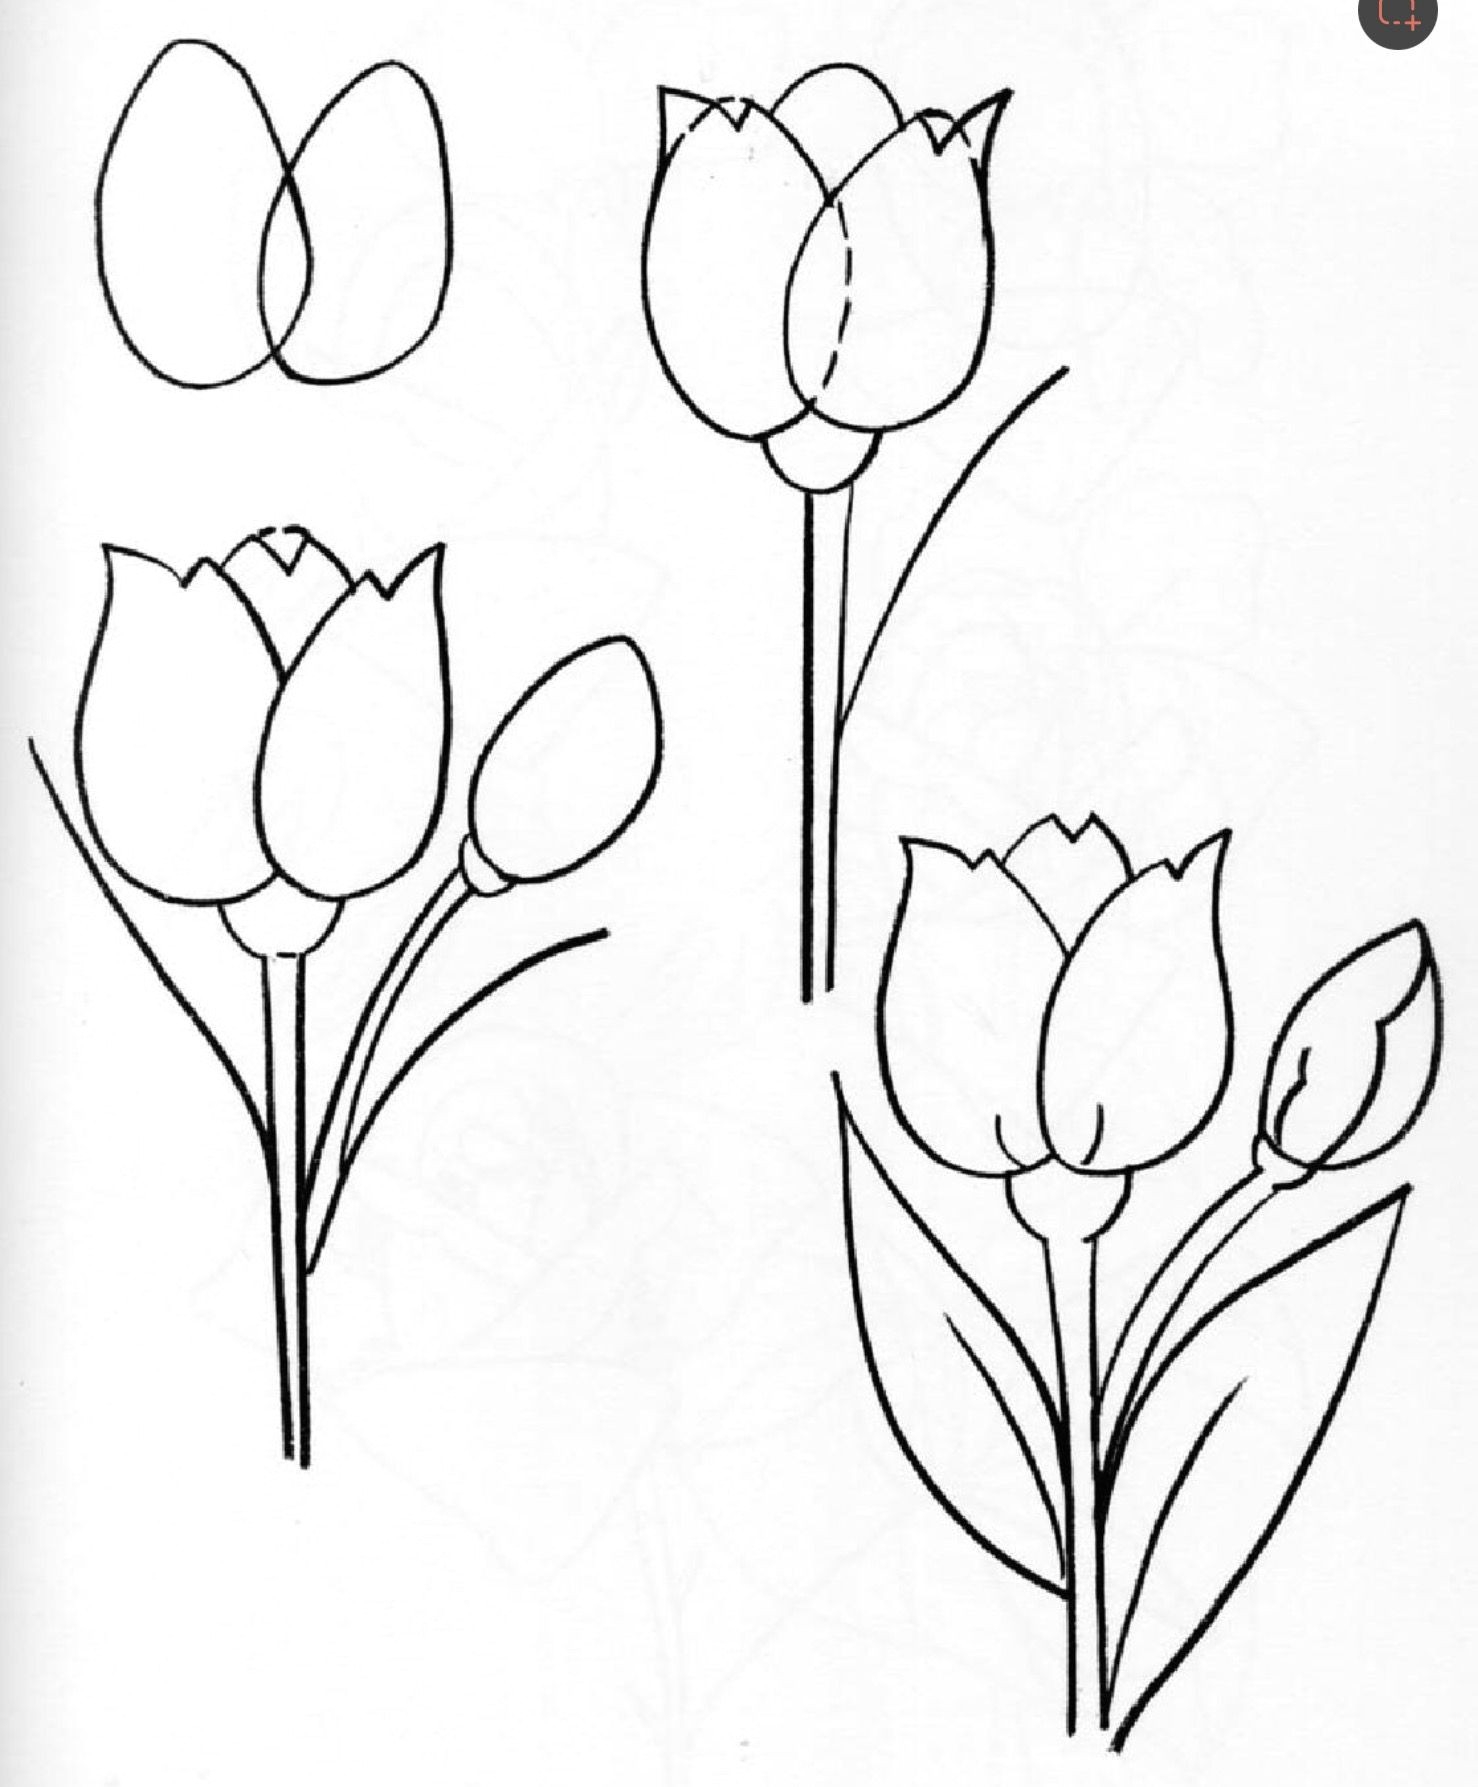 Нарисовать тюльпан поэтапно для детей как карандашом начинающих